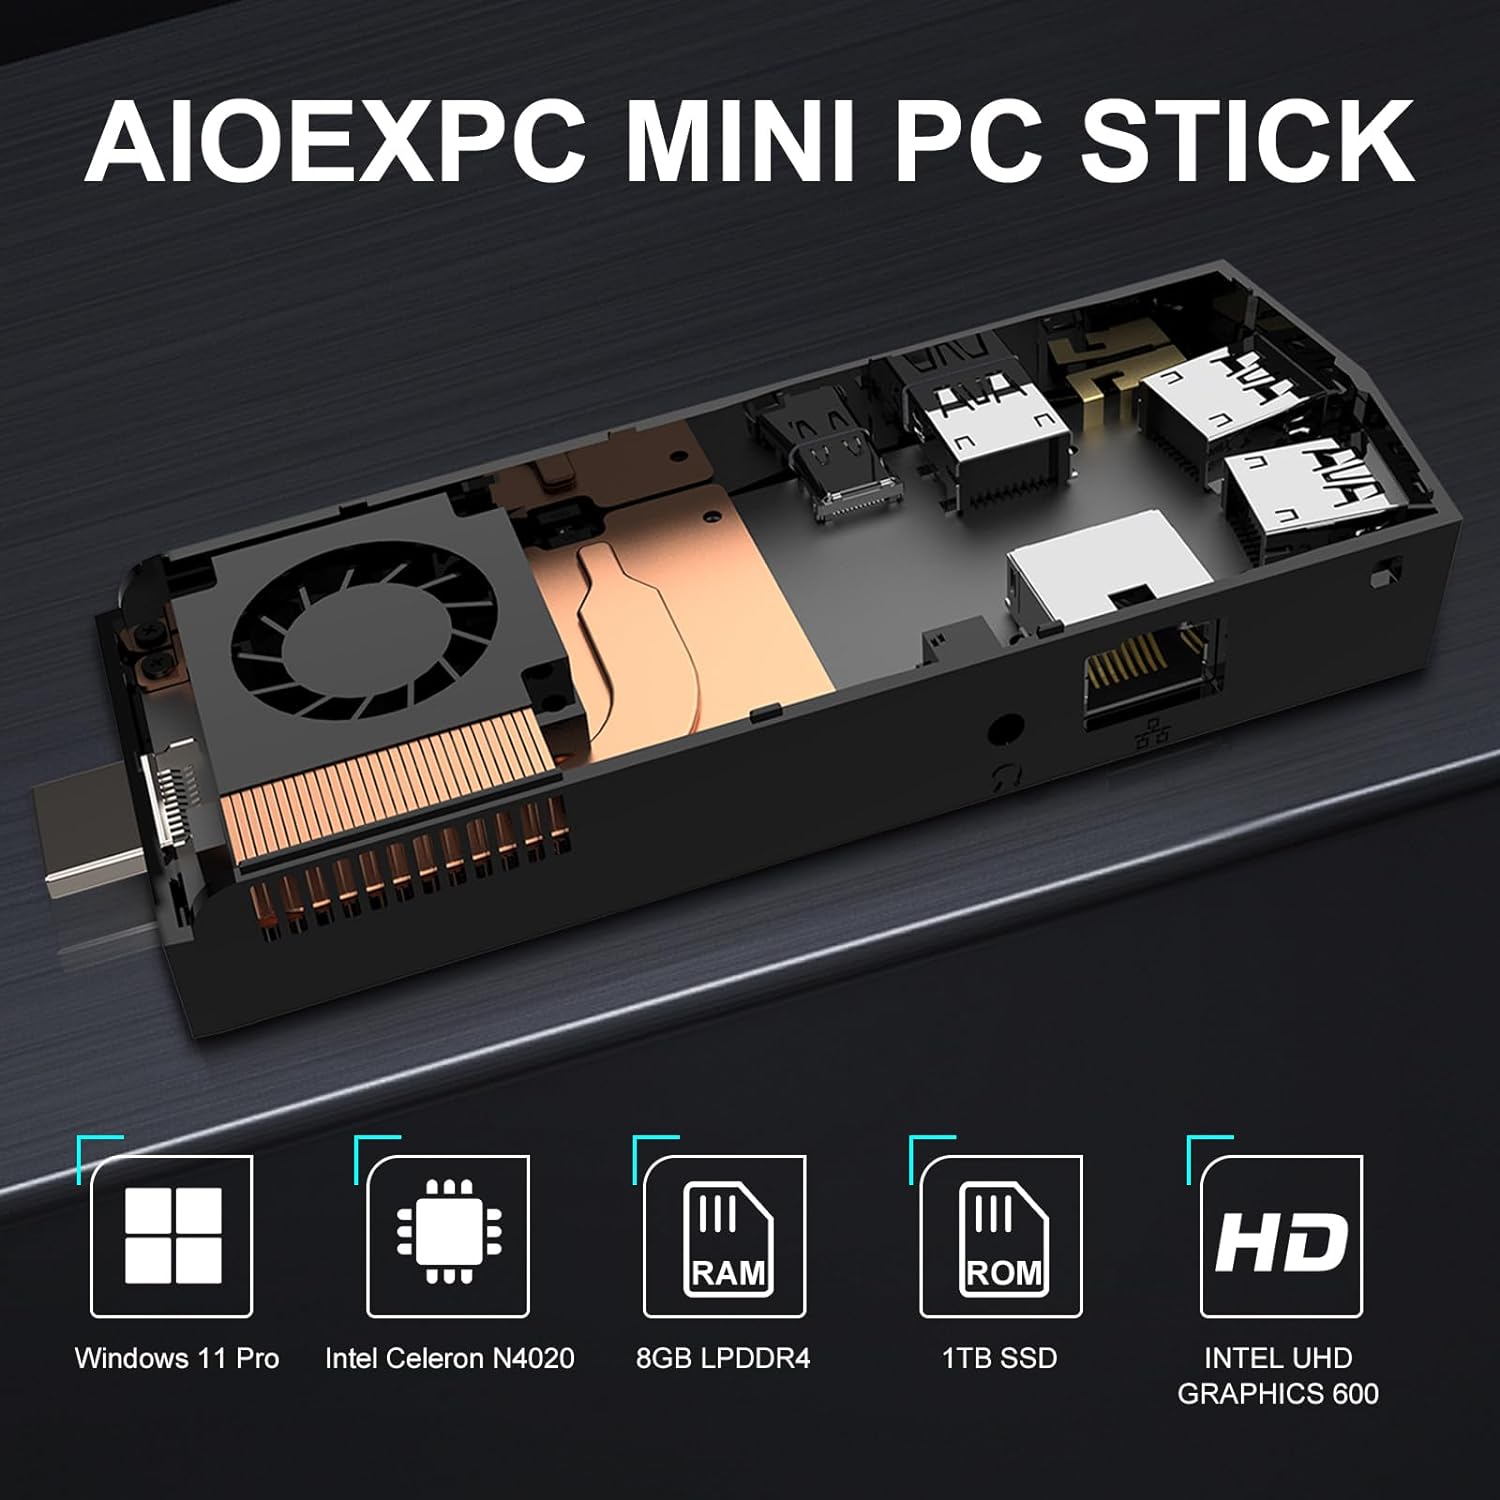 AIOEXPC Mini PC Stick Intel Celeron N4020 Windows 11 Pro 8GB DDR4 1TB SSD Mini Compute Stick Support 4K HDMI, 2.4G/5.0G WiFi, Gigabit Ethernet, Bluetooth 4.2, USB 3.0